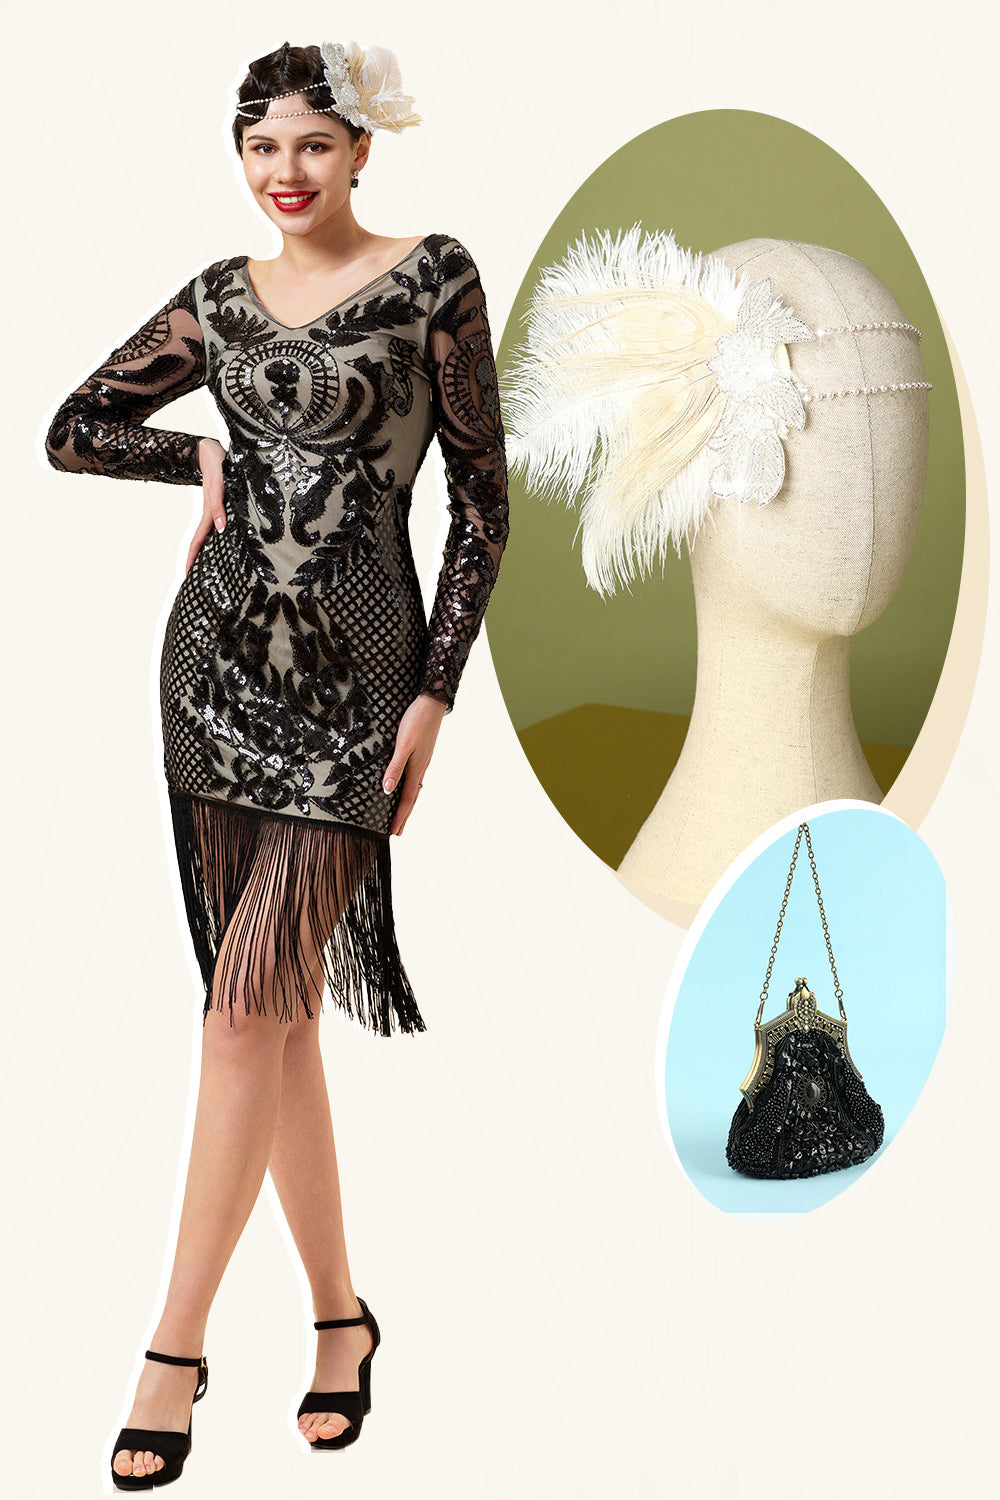 Schwarzes langärmeliges Paillettenfransen 1920er Jahre Gatsby Flapper Kleid mit 20er Jahren Accessoires Set